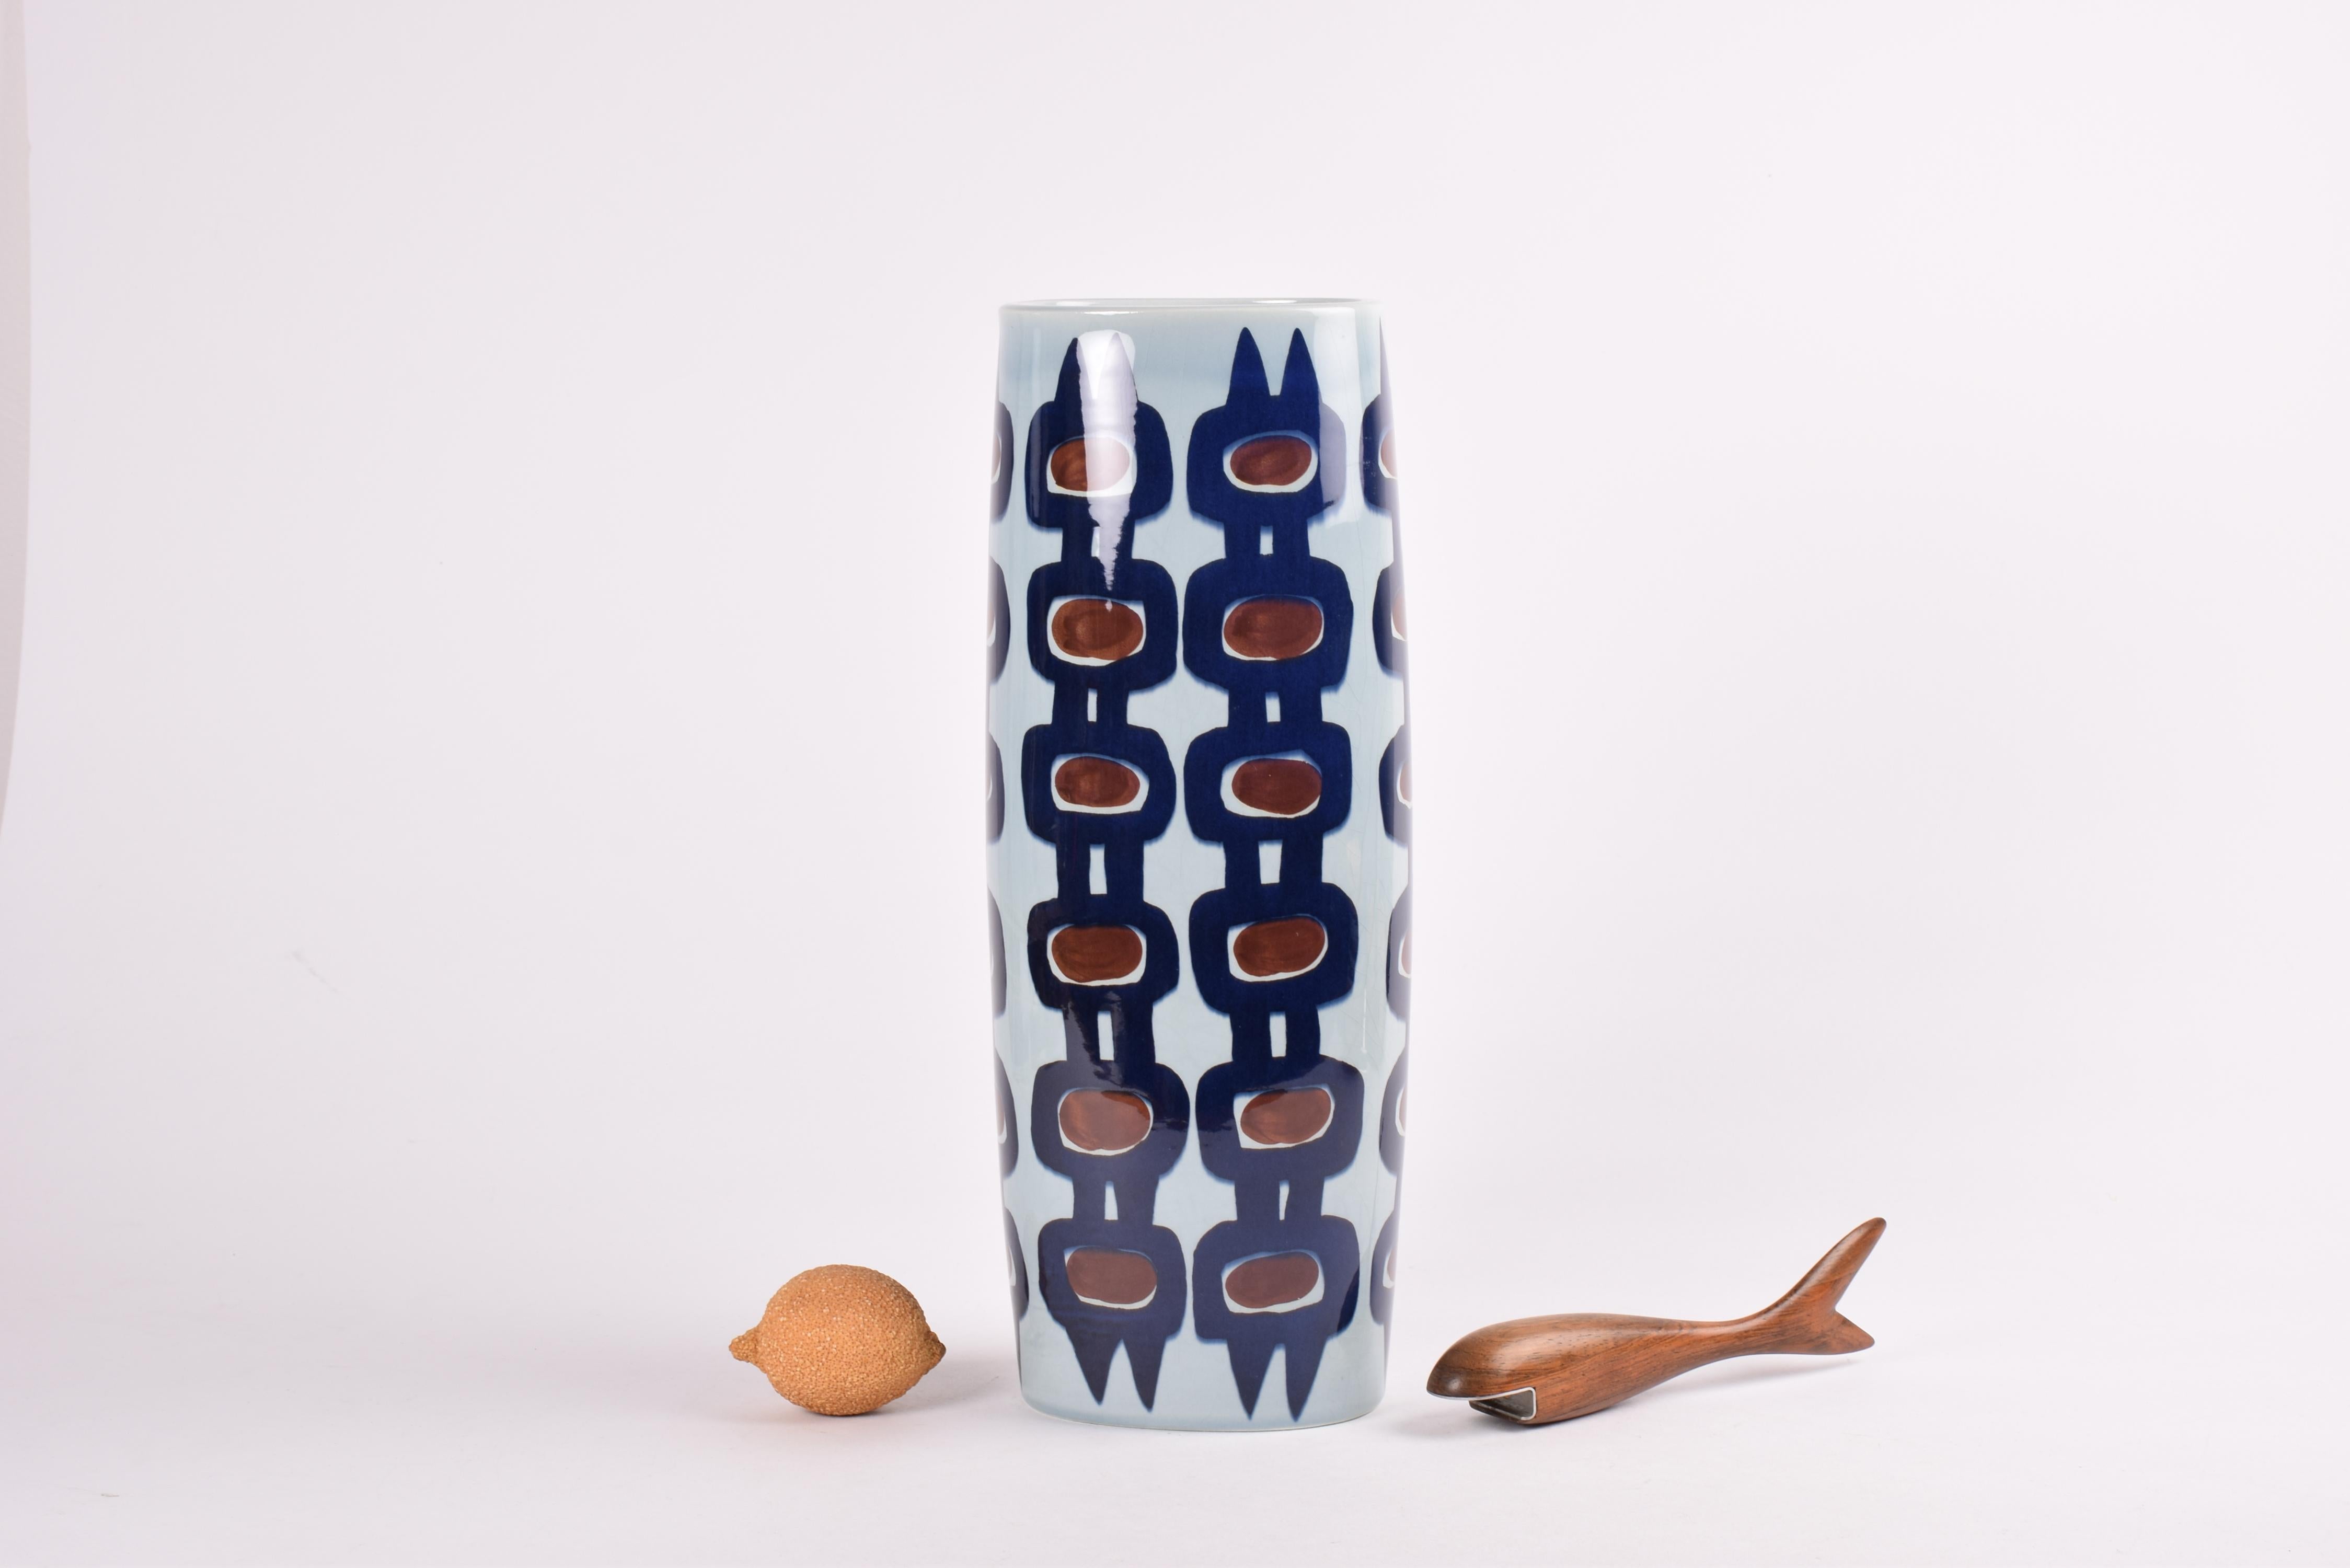 Sehr hohe Vase aus der Royal Copenhagen Tenera Serie.
Das kühne handgemalte Dekor wurde von Inge-Lise Koefoed entworfen.
Die Vase wurde im Zeitraum 1992-1999 hergestellt.

Die Vase ist in sehr gutem Vintage-Zustand.
Sie ist als fabrikneu